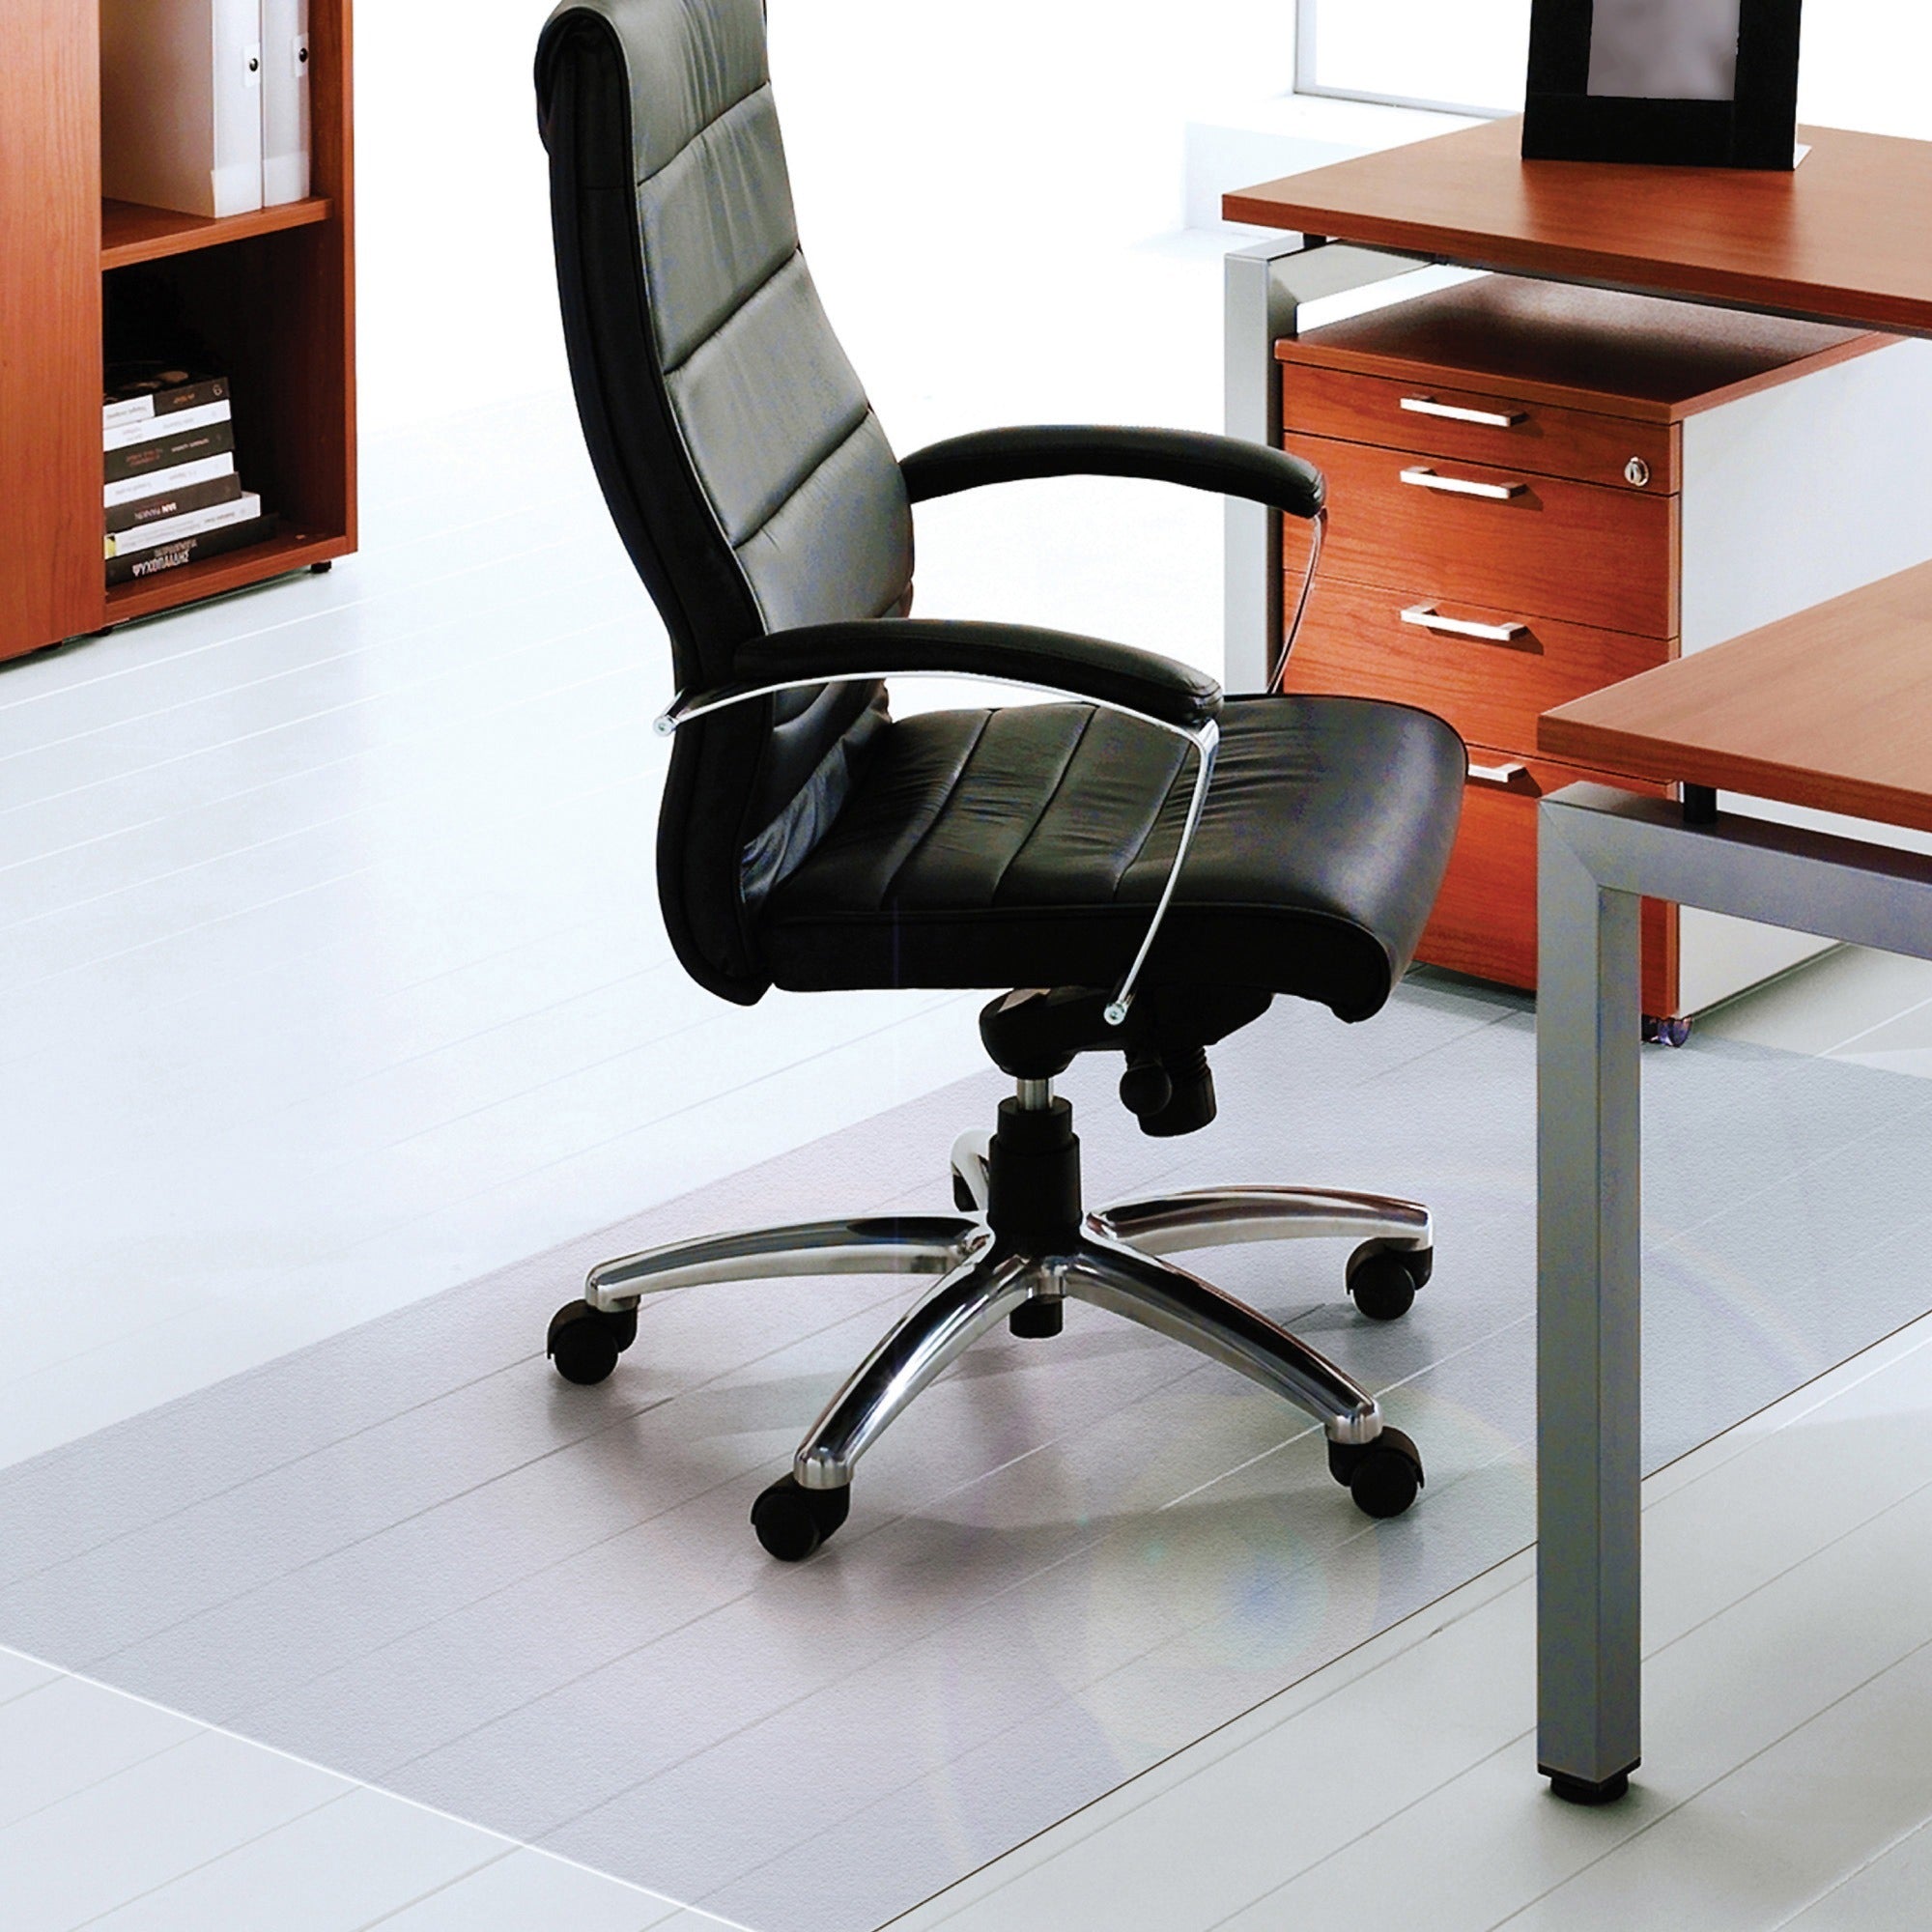 Ultimat XXL Polycarbonate Rectangular Chair Mat for Hard Floors - 60" x 79" - Clear XXL Rectangular Polycarbonate Chair Mat for Hard Floor - 79"L x 60"W x 0.075"D - 